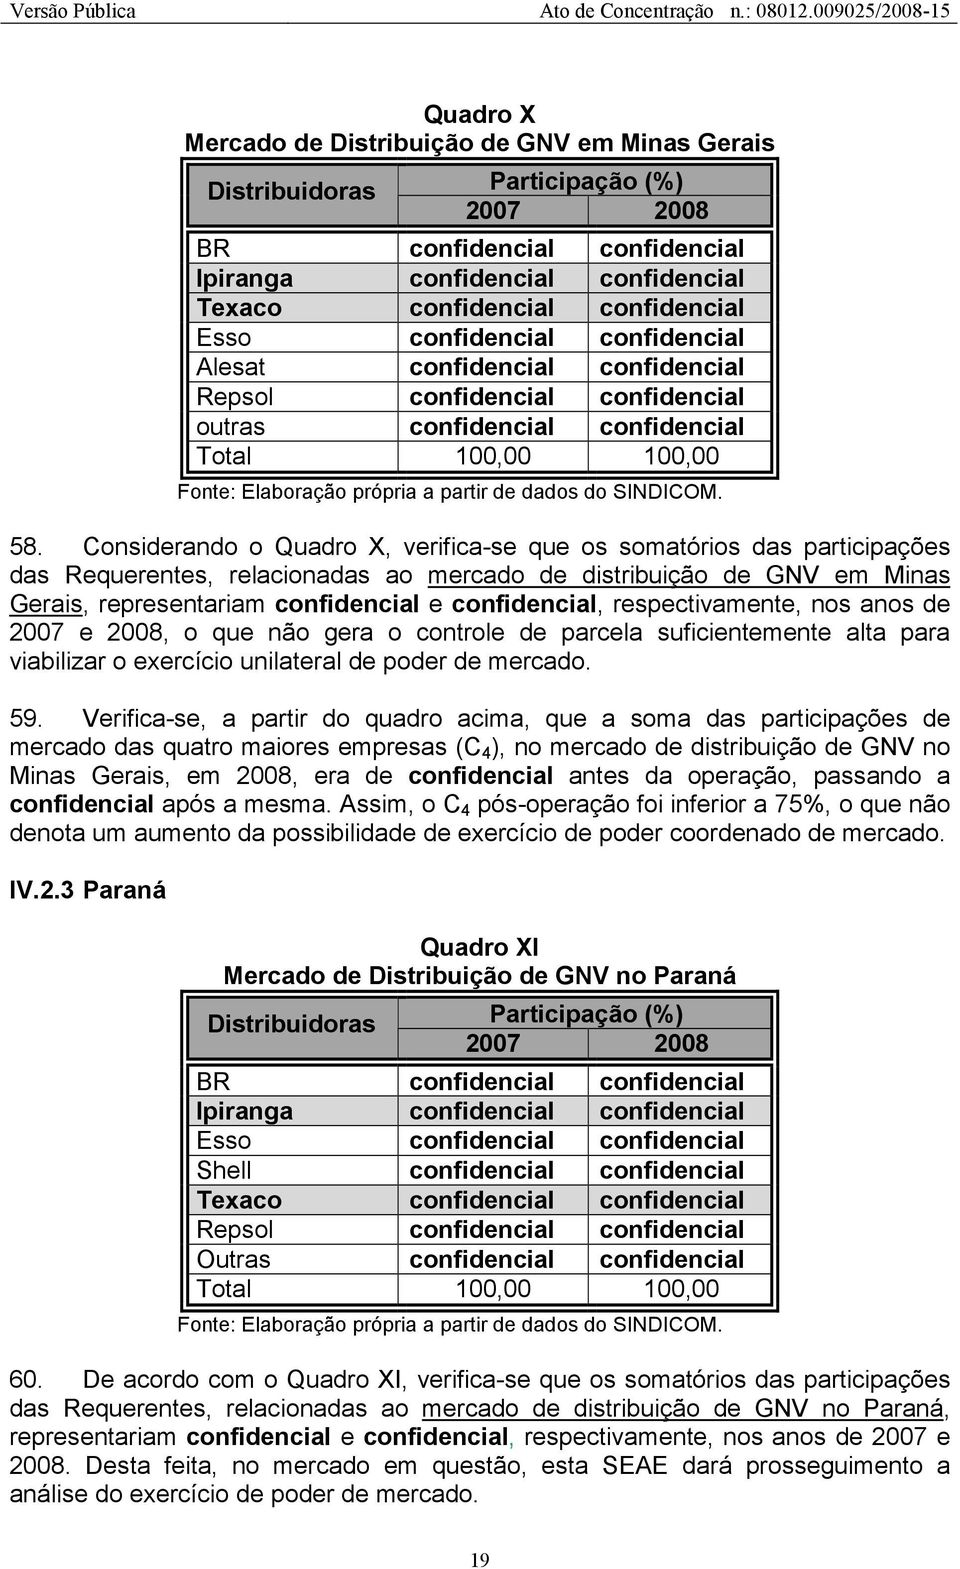 Considerando o Quadro X, verifica-se que os somatórios das participações das Requerentes, relacionadas ao mercado de distribuição de GNV em Minas Gerais, representariam e, respectivamente, nos anos